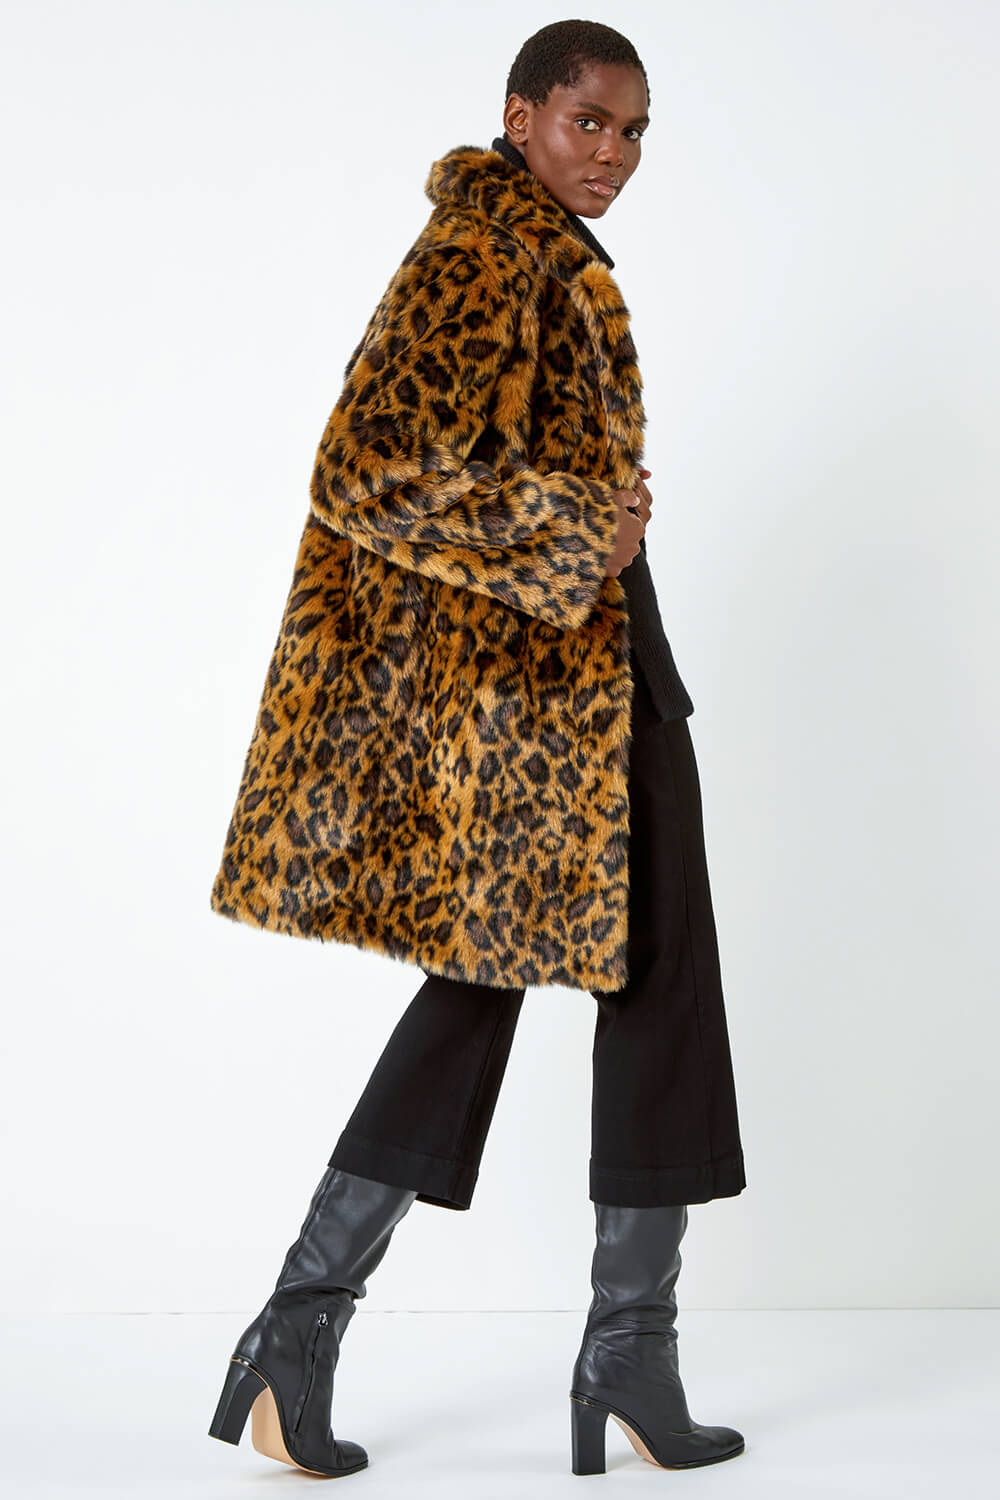 Tan Premium Animal Print Faux Fur Coat, Image 3 of 5